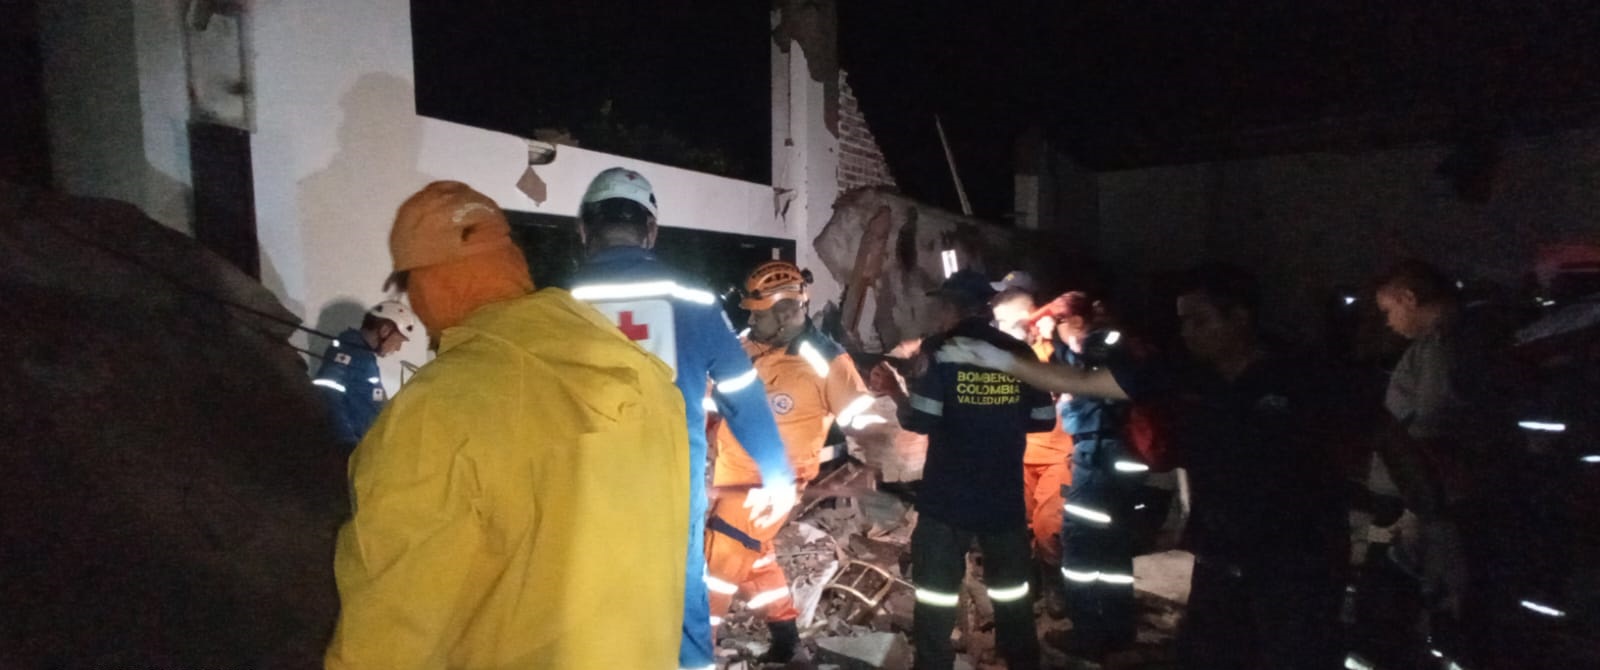 Imagen del rescate de personas tras la caída de un techo en un matrimonio en Valledupar.